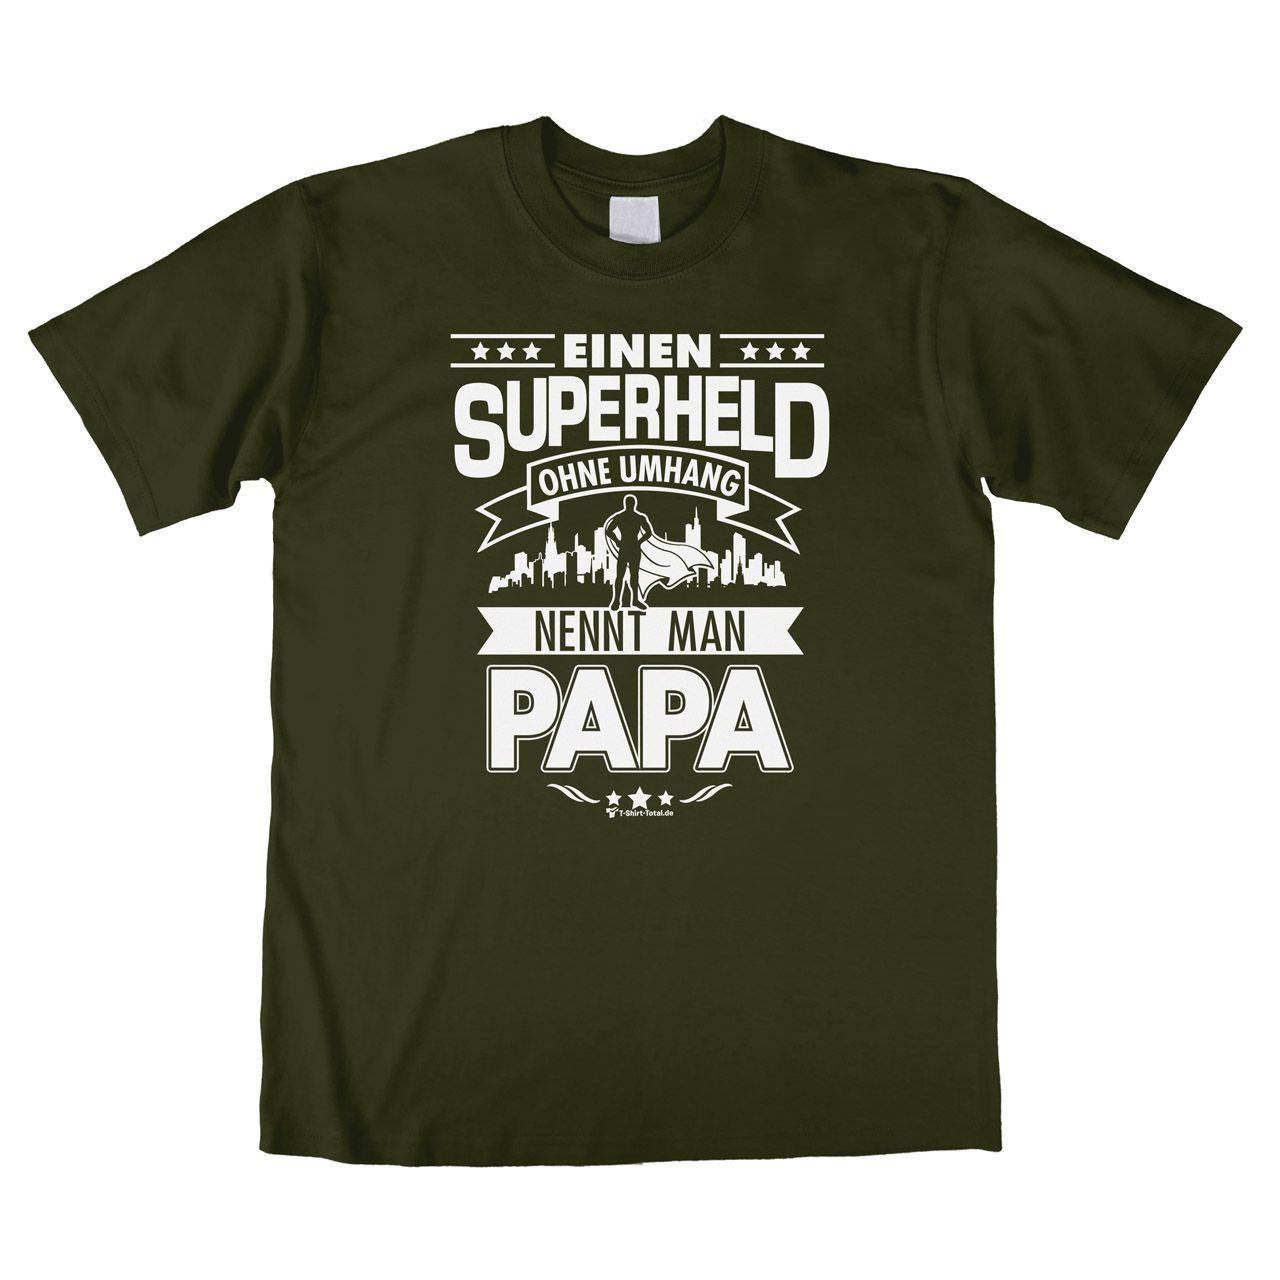 Superheld Papa Unisex T-Shirt khaki Large